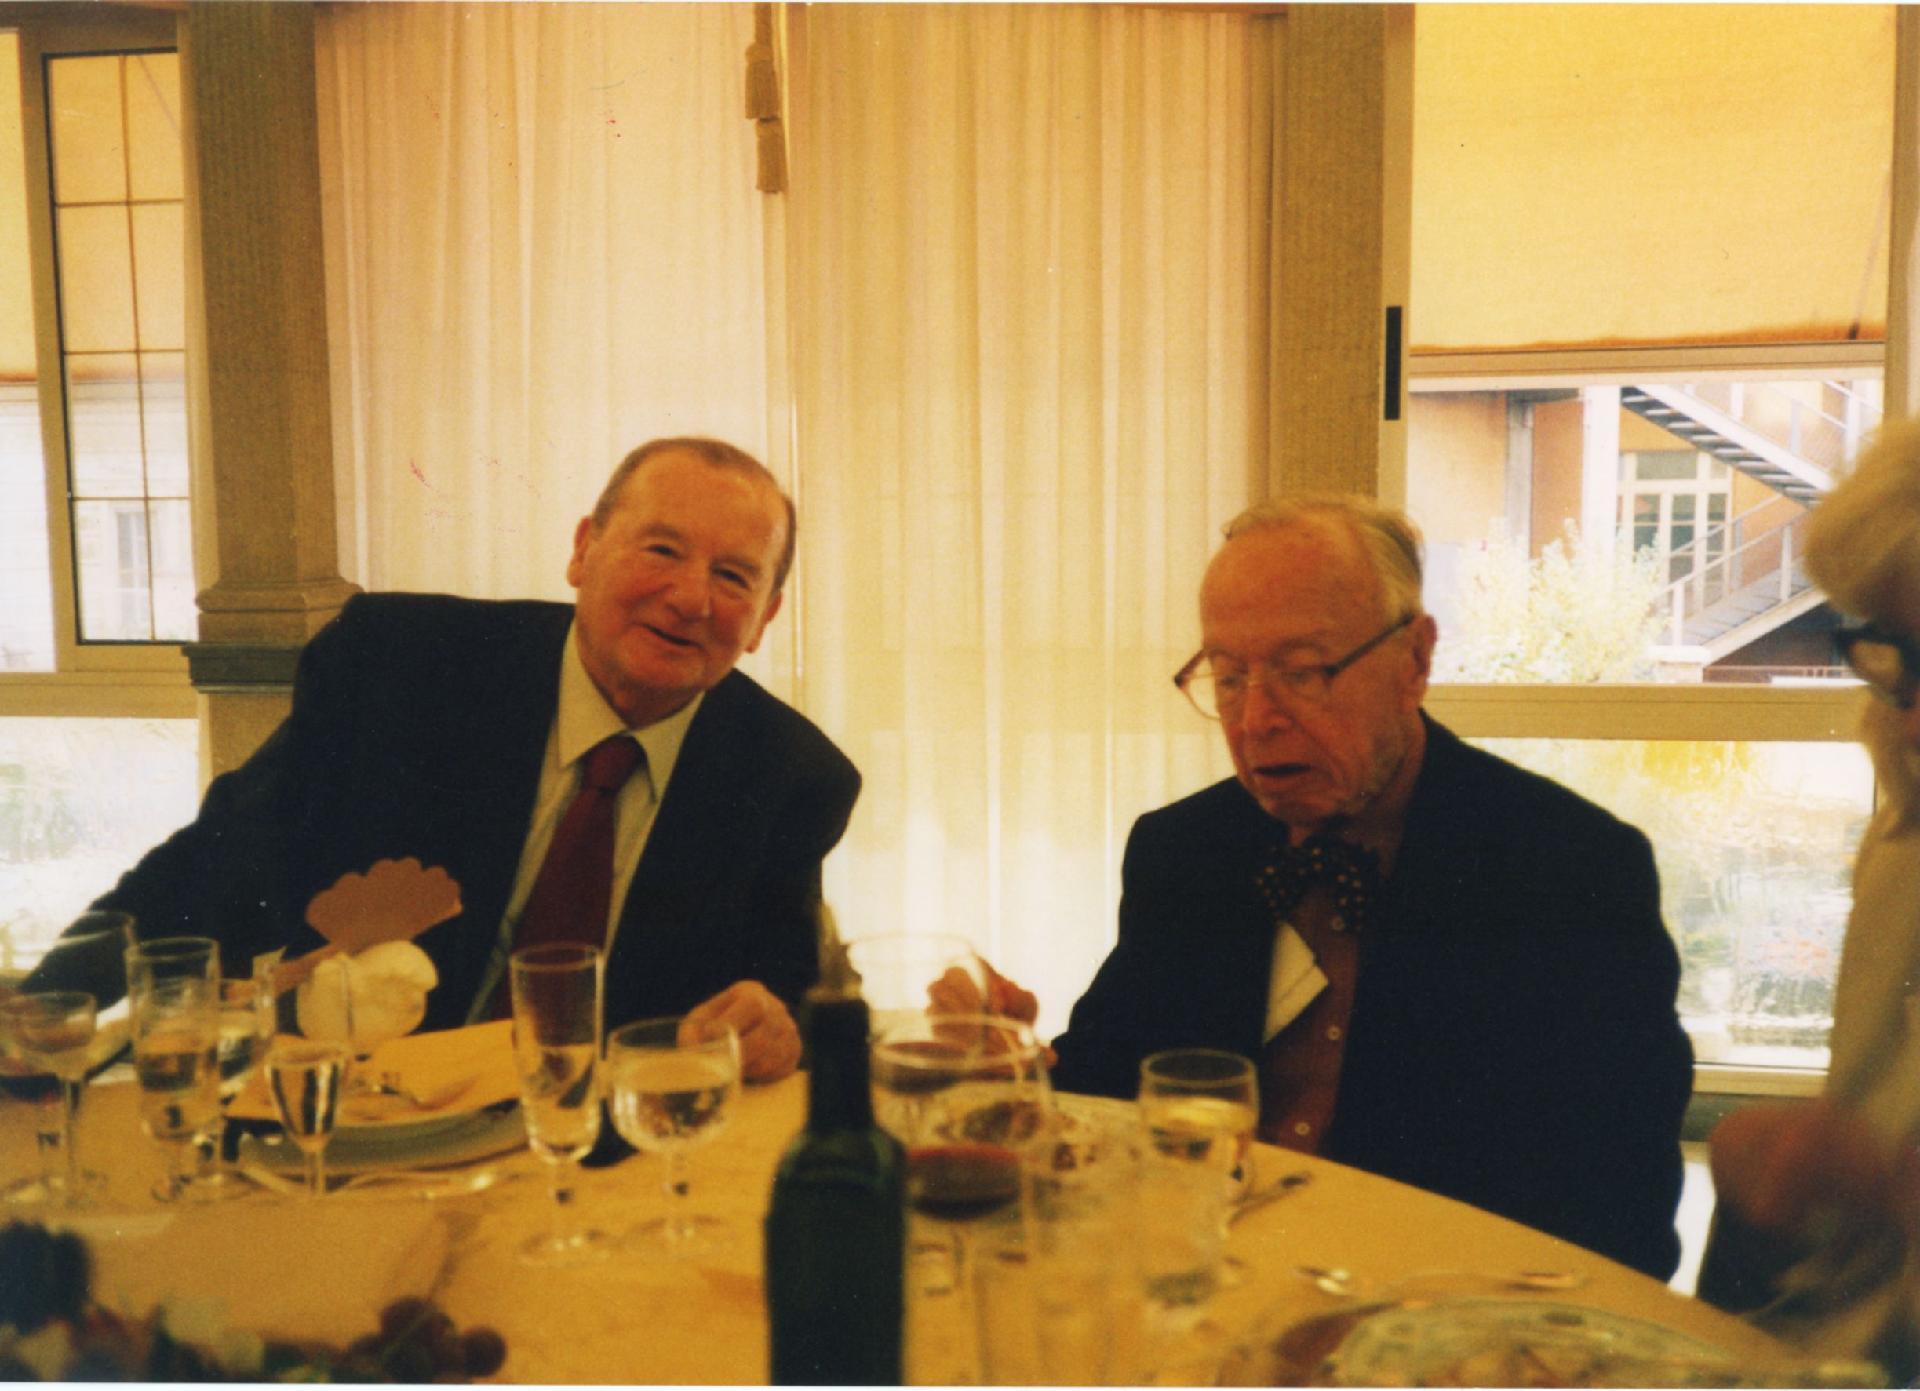 Gianni Bisiach con Arthur Schlesinger nel 2003 in occasione della mostra su Kennedy alla Camera dei deputati a pranzo da Vanni a Roma